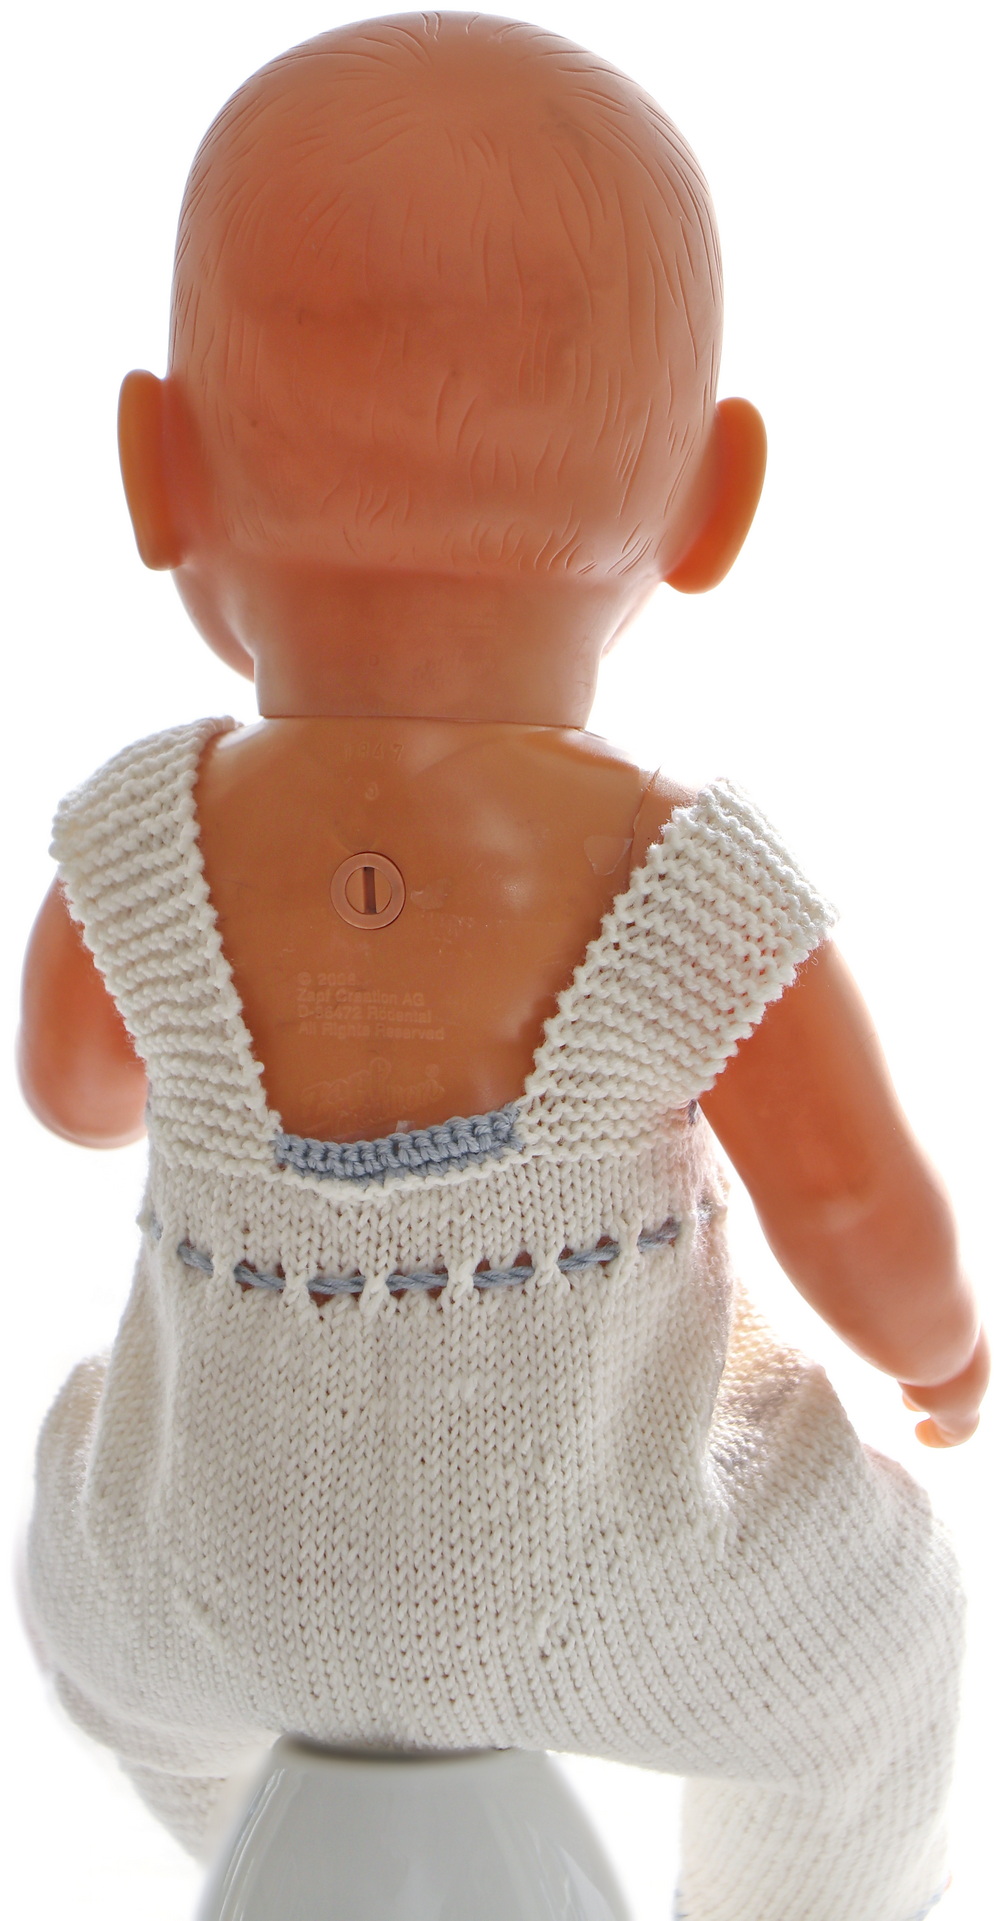 0232d-11-knitting-patterns-for-american-girl-dolls.jpg